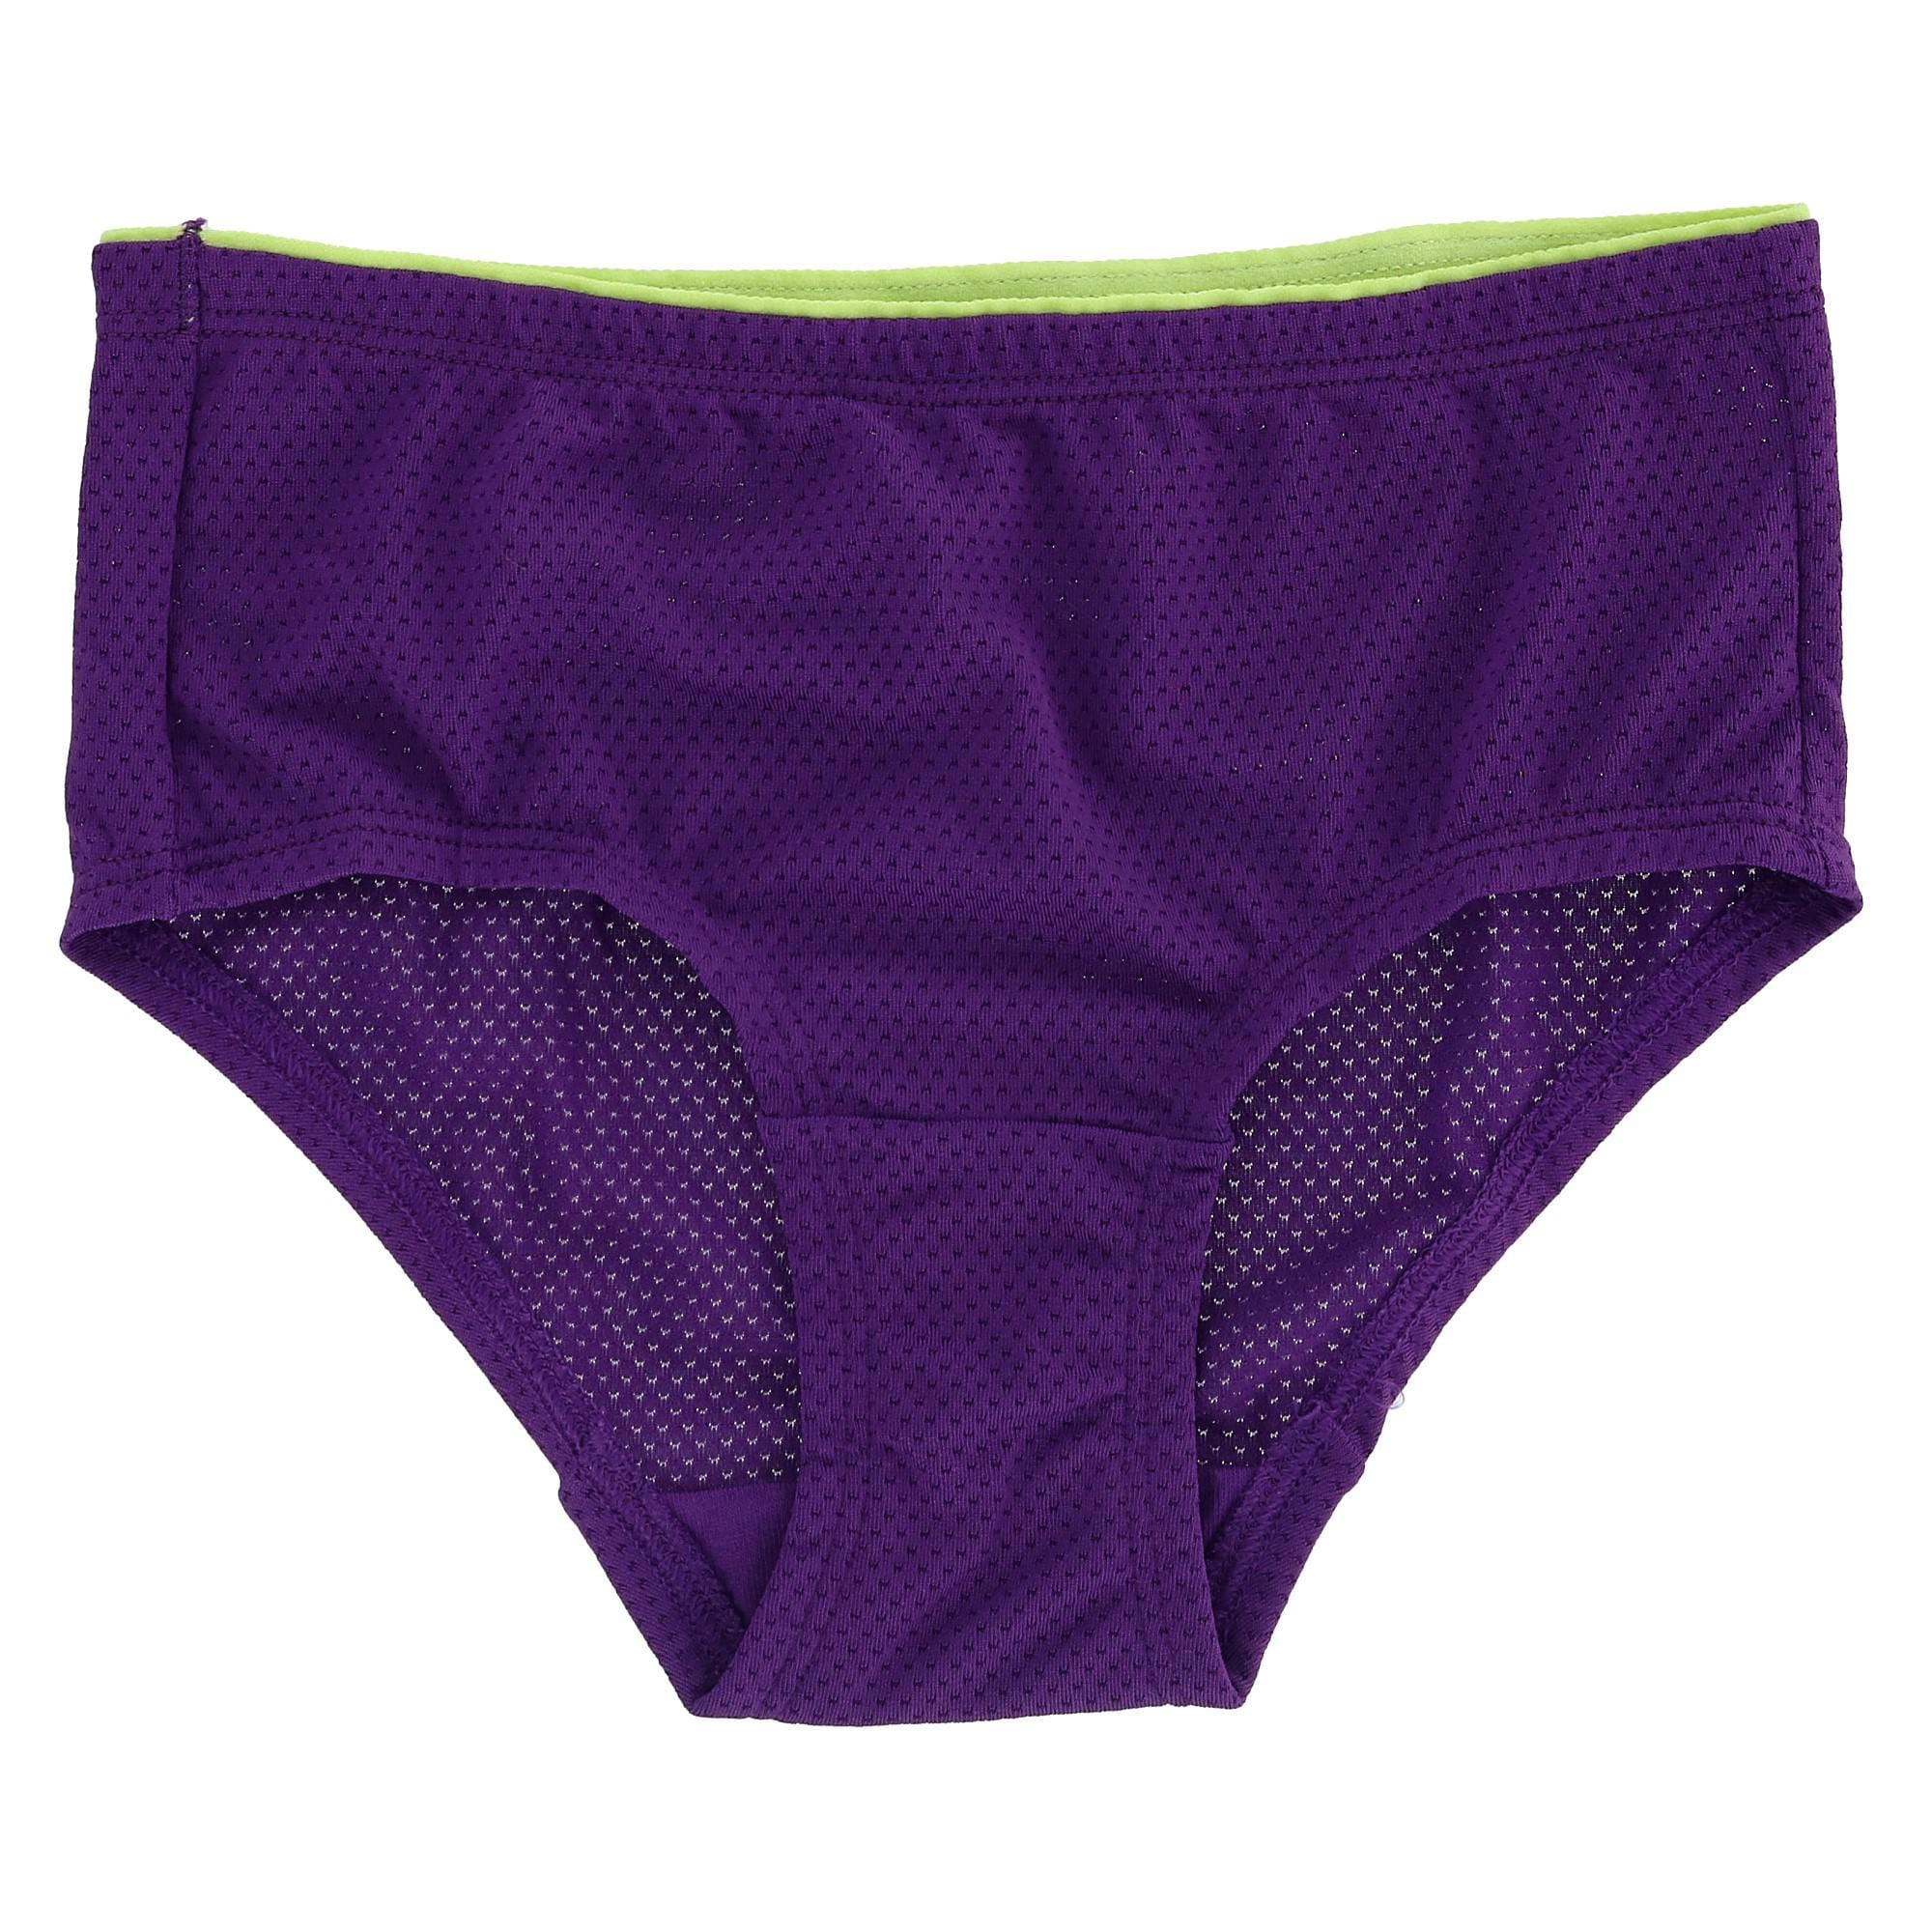 6 Pack of Girls Purple Underwear